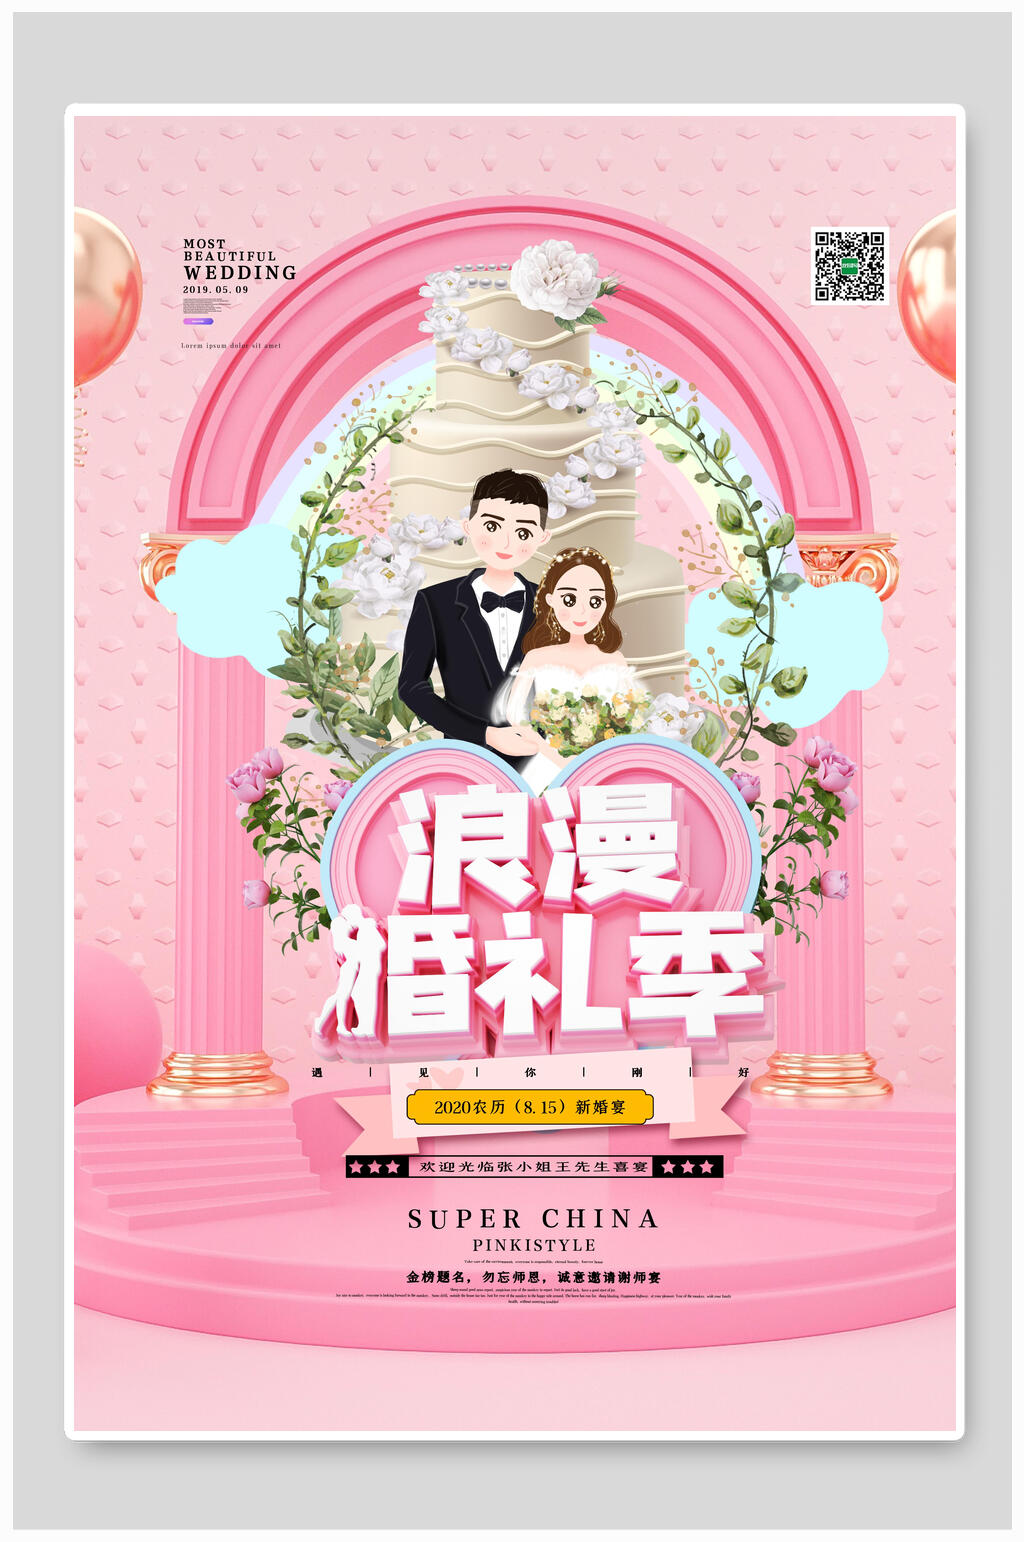 众图网独家提供浪漫结婚婚礼纪海报素材免费下载,本作品